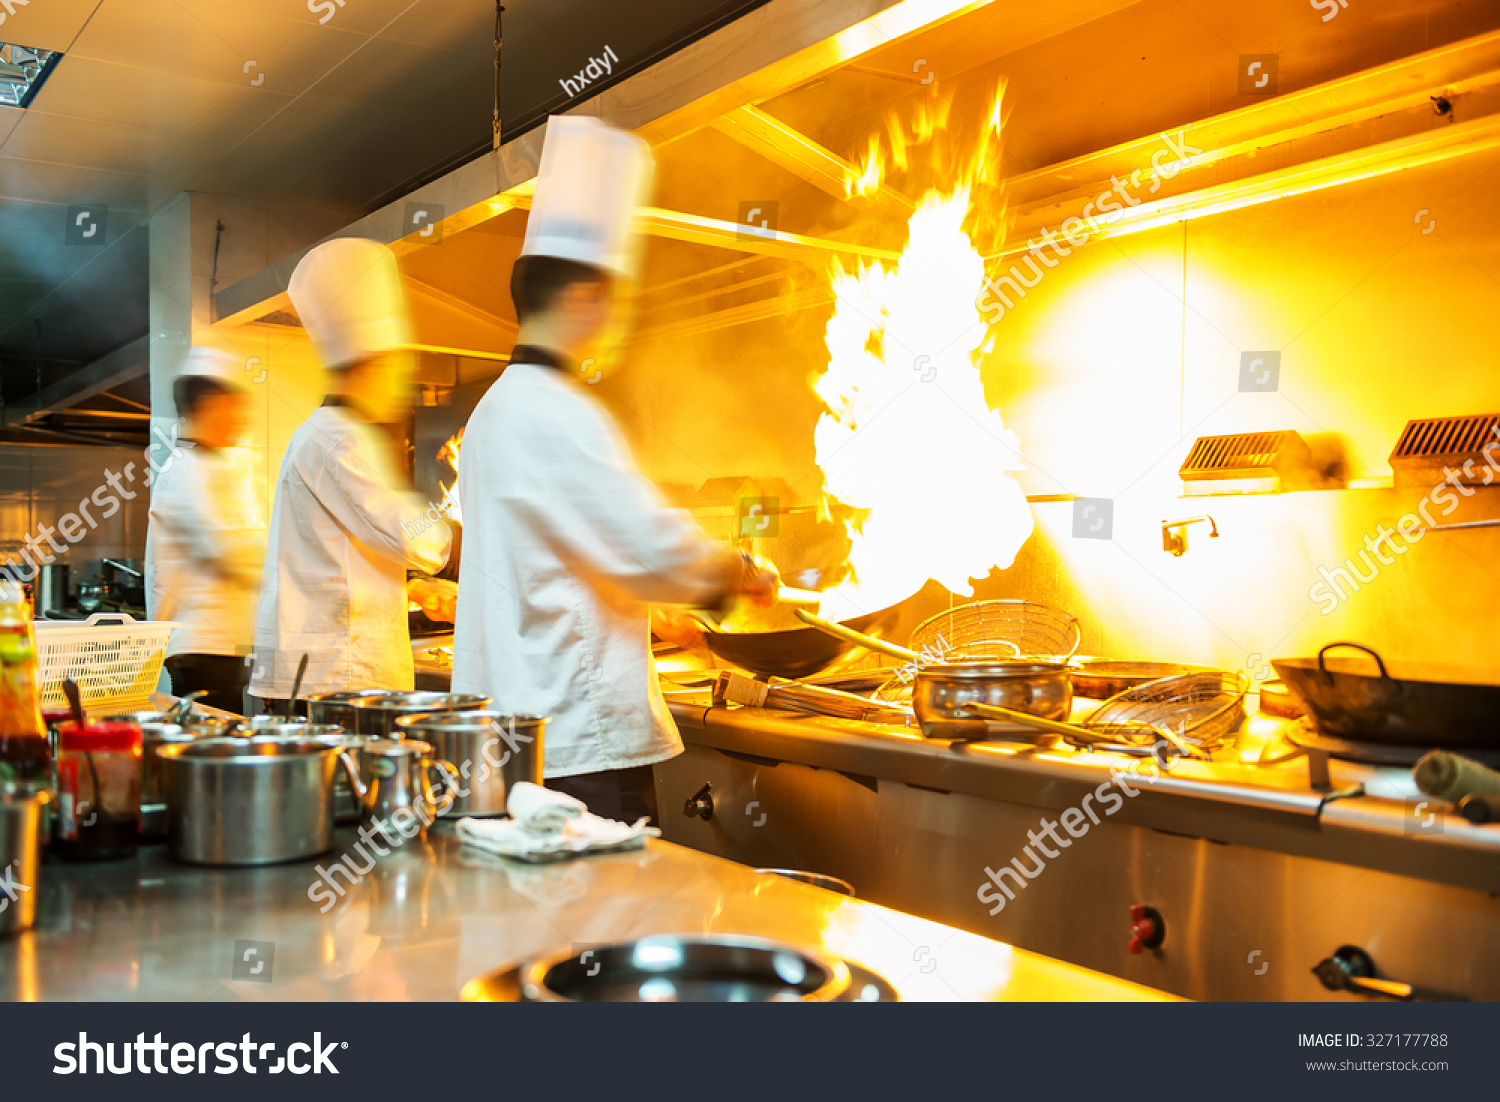 Chef Restaurant Kitchen Stove Pan Doing Stock Photo 327177788 ...